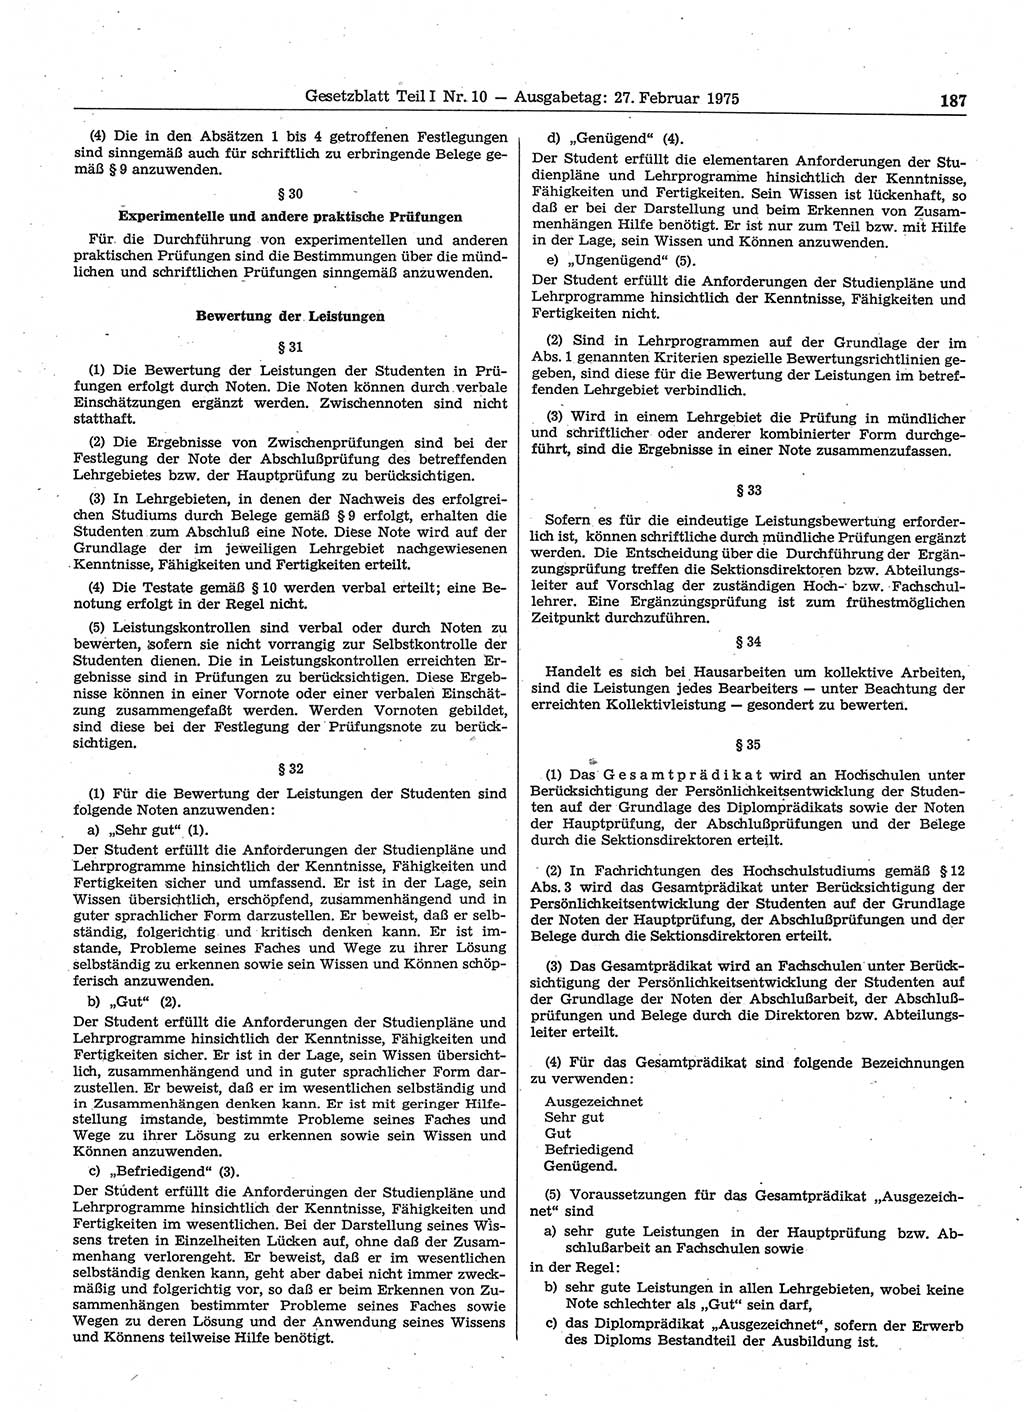 Gesetzblatt (GBl.) der Deutschen Demokratischen Republik (DDR) Teil Ⅰ 1975, Seite 187 (GBl. DDR Ⅰ 1975, S. 187)